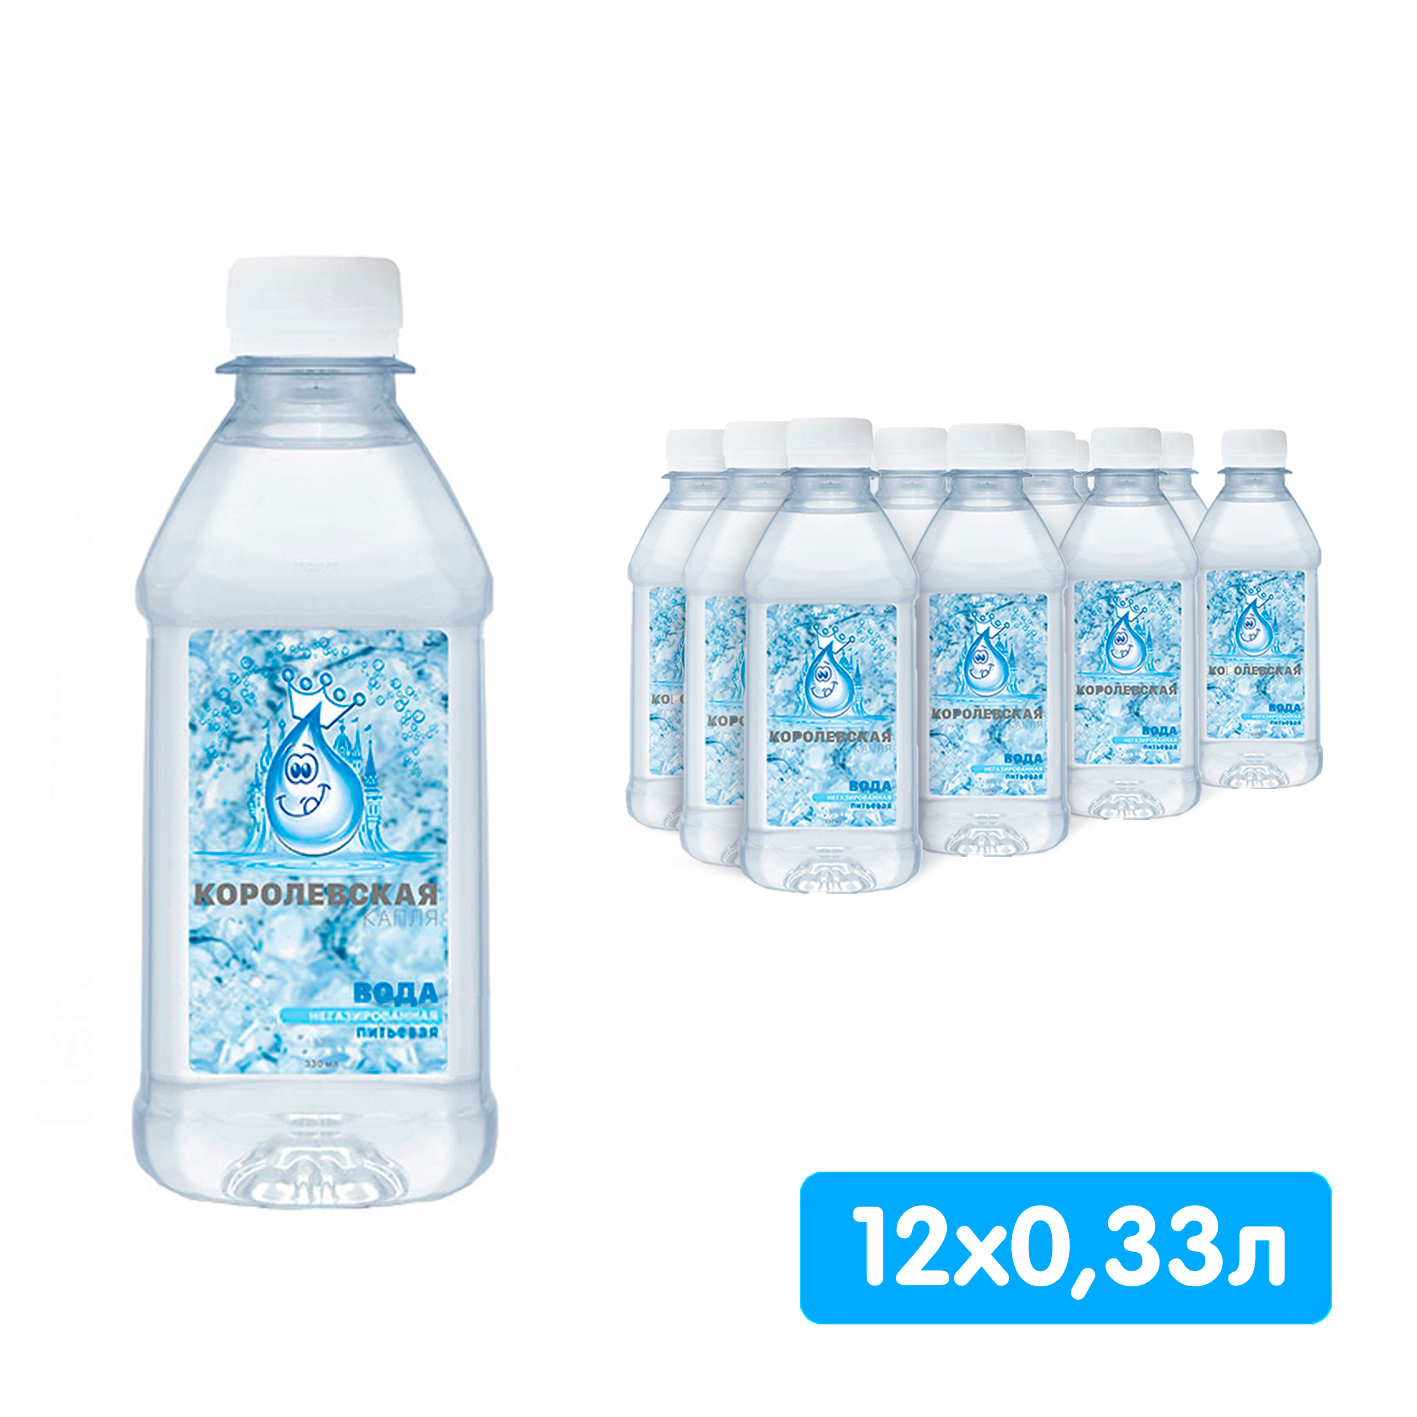 Королевская вода (Мия) 0.33 литра, без газа, пэт, 12 шт. в уп